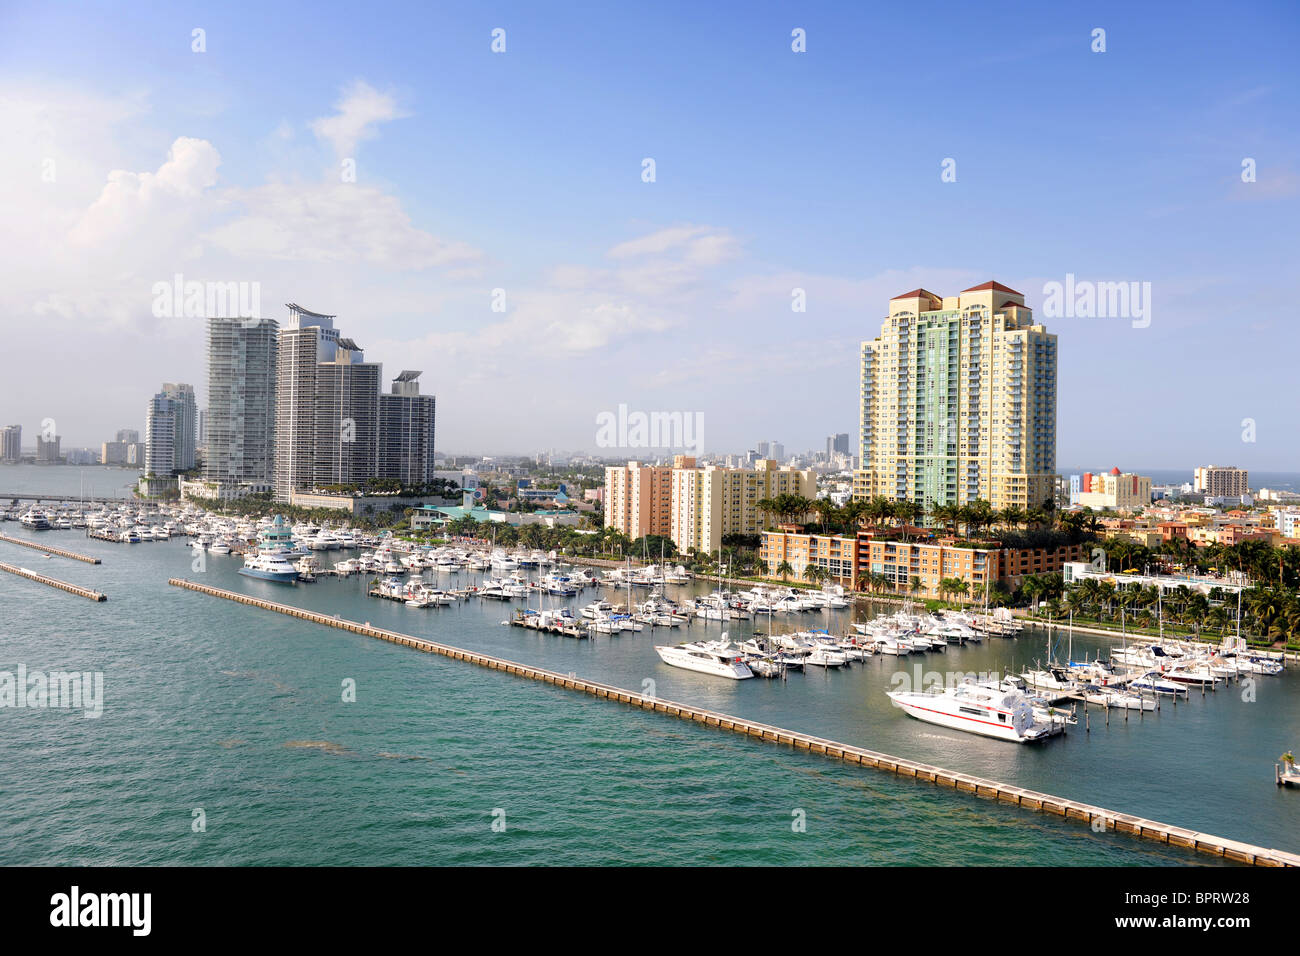 Vue aérienne de South Miami au cours de journée ensoleillée Banque D'Images